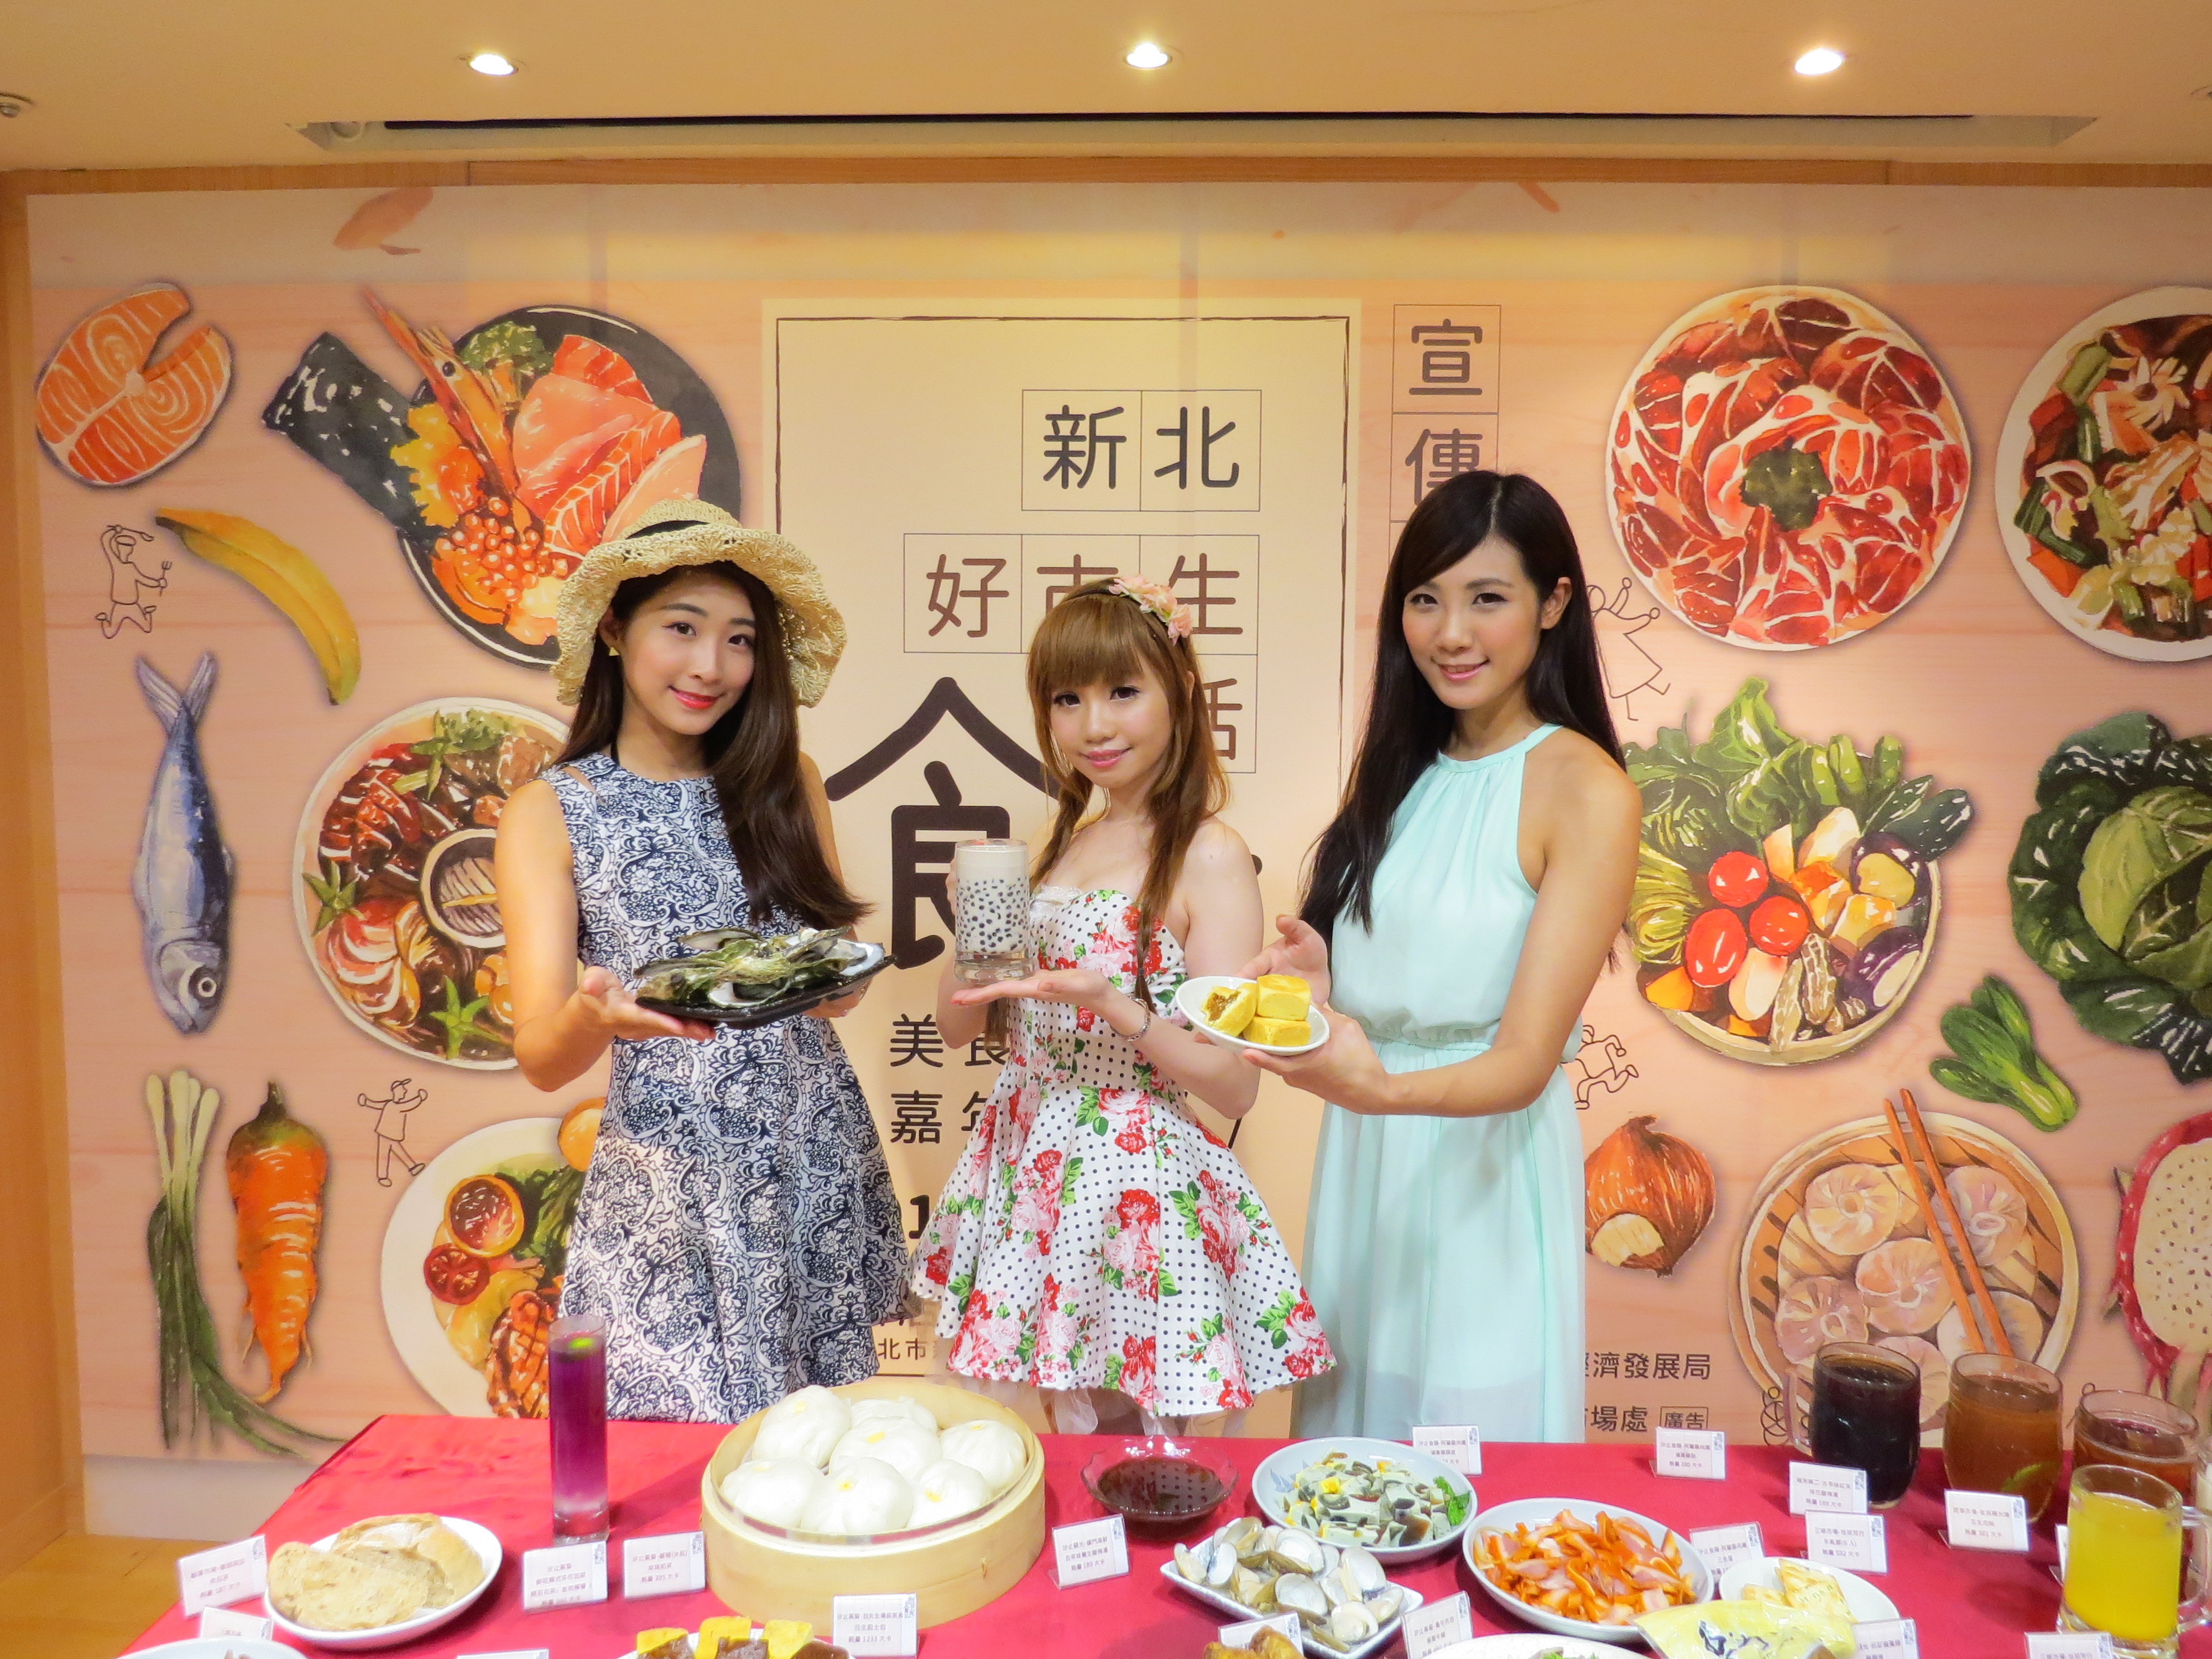 10月23日到碧潭岸廣場就可享用超過50道新北傳統特色美食